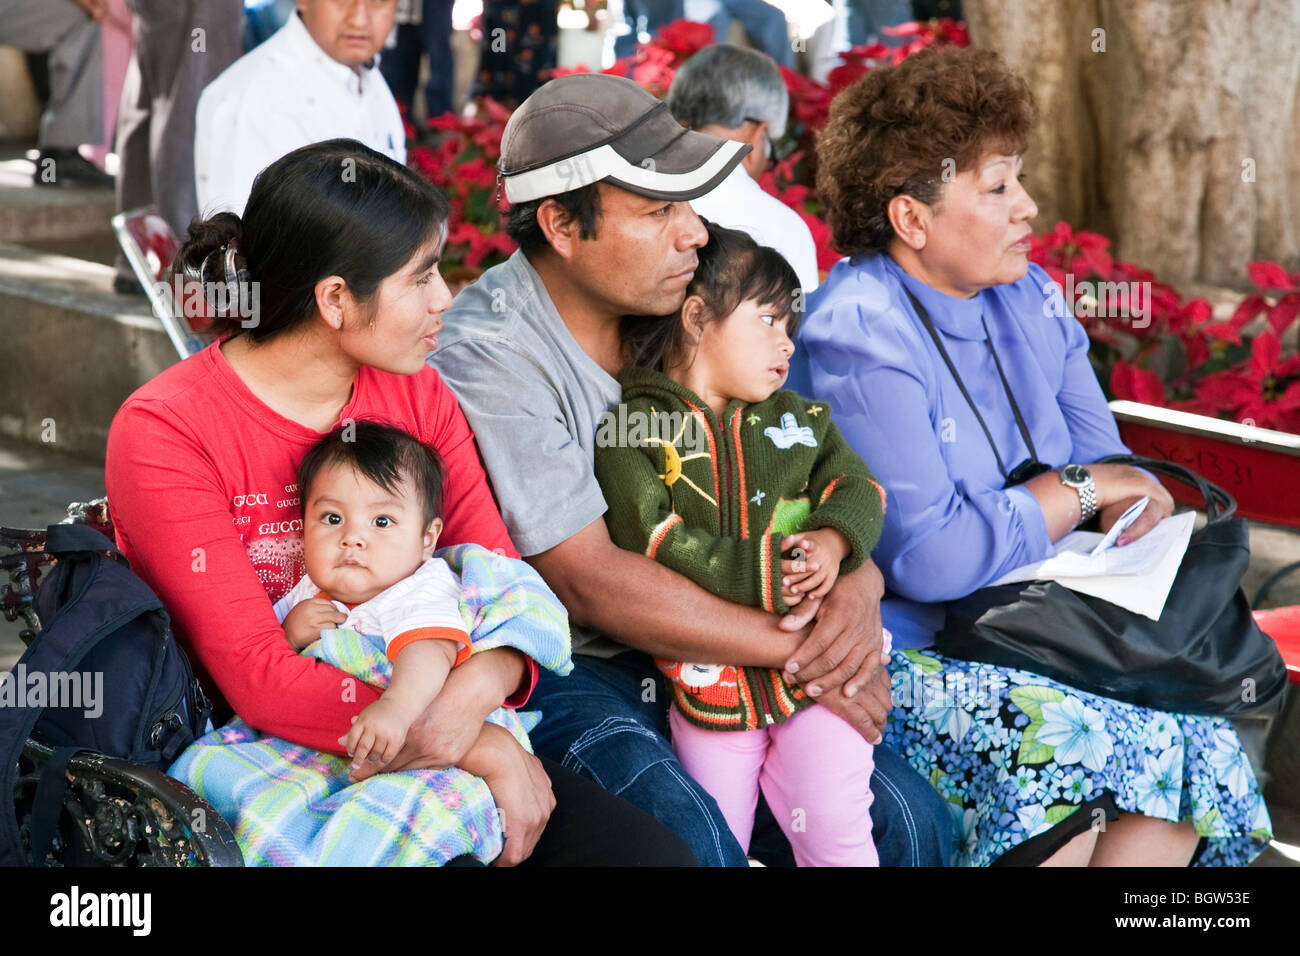 Jeune mexicaine famille avec deux enfants et grand-mère élégant assis en public lors de concert du dimanche dans la ville d'Oaxaca Zocalo Banque D'Images